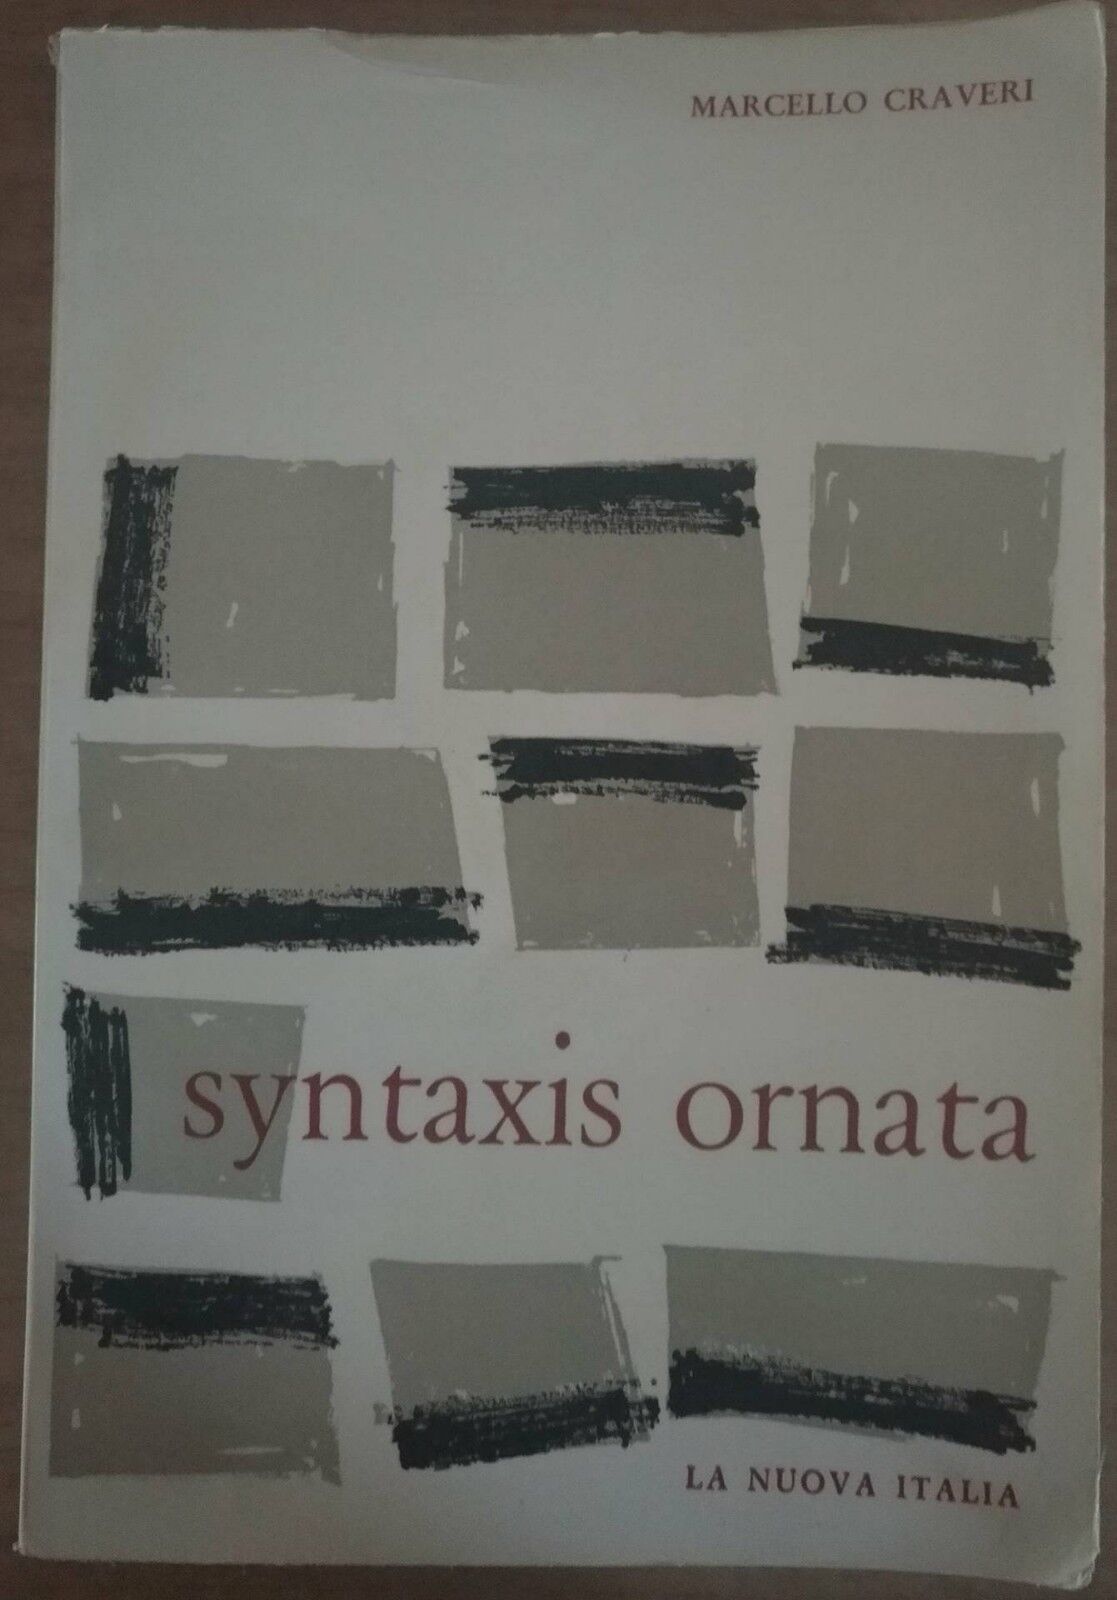  Syntaxis ornata - Marcello Craveri,  1961,  La Nuova Italia - S